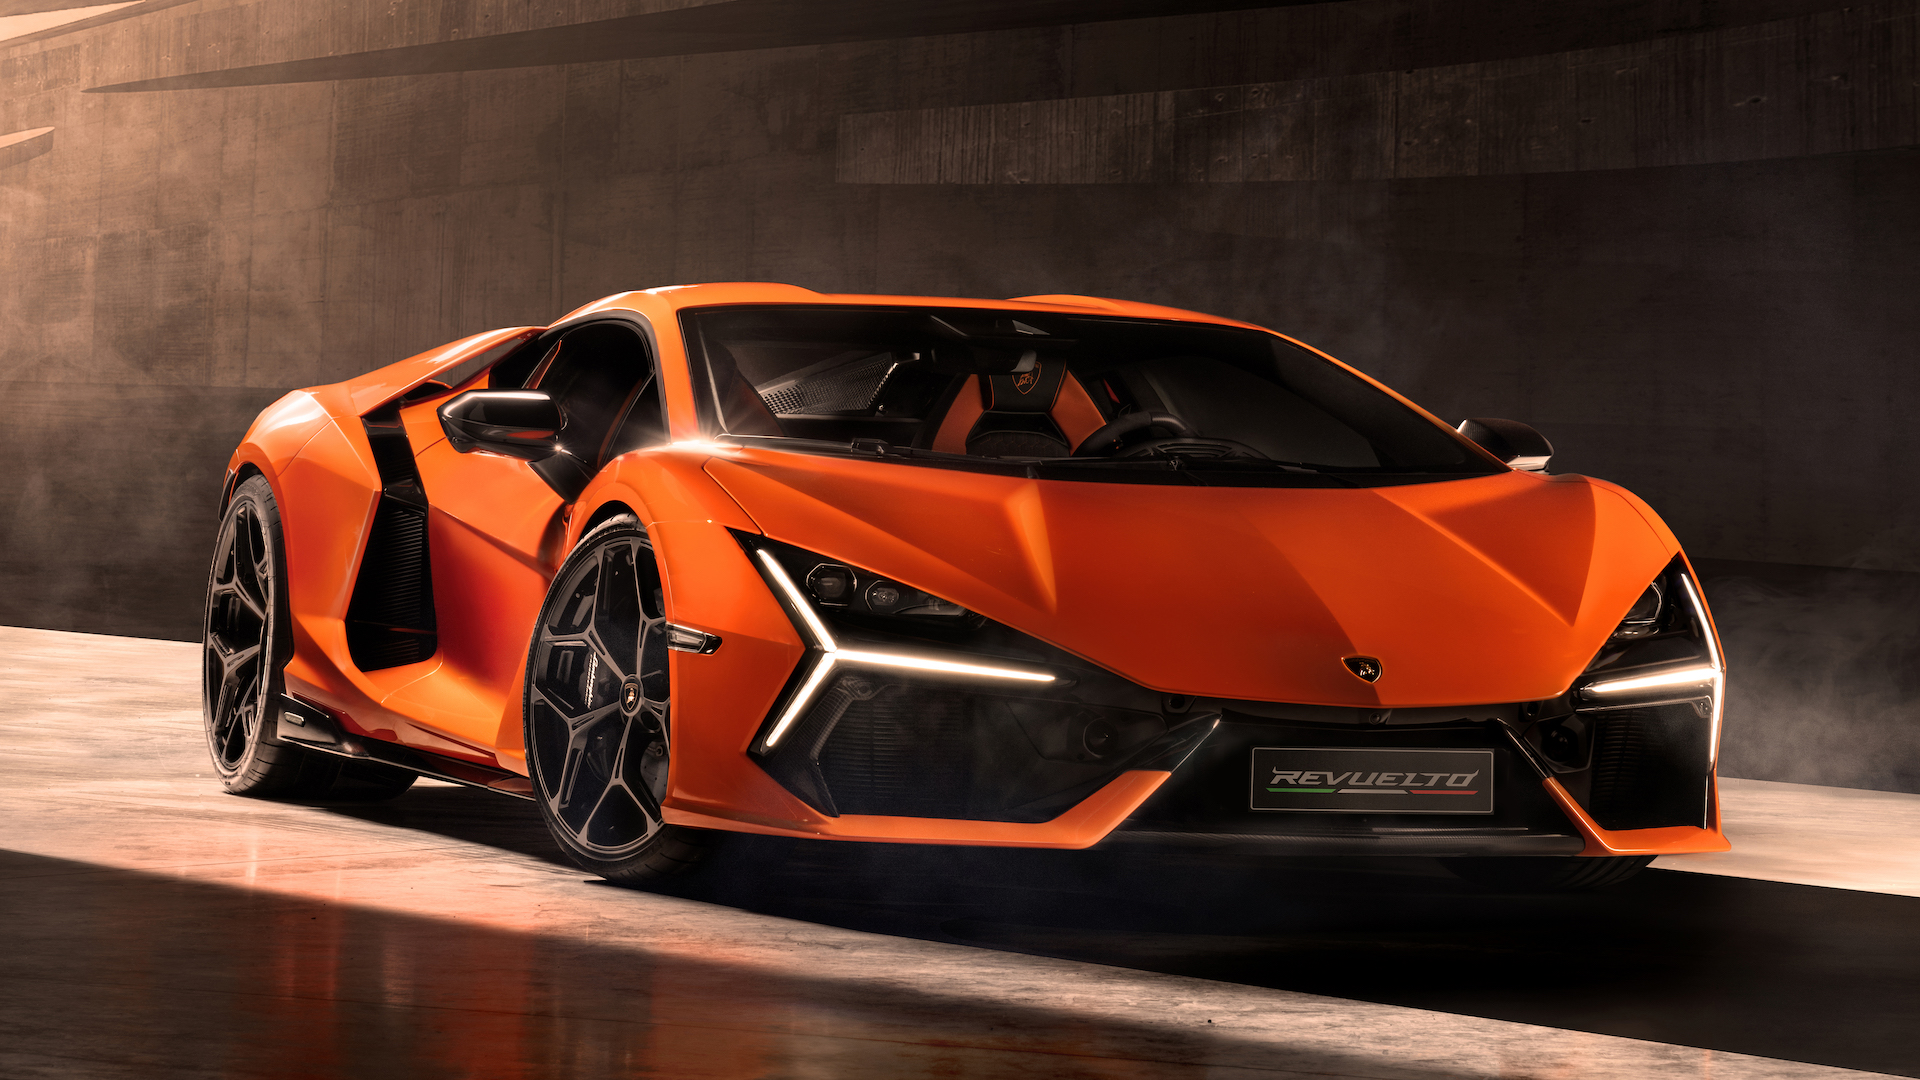 The Lamborghini Revuelto Is a 1,001-HP, 9,500-RPM Hybrid V12 Aventador ...